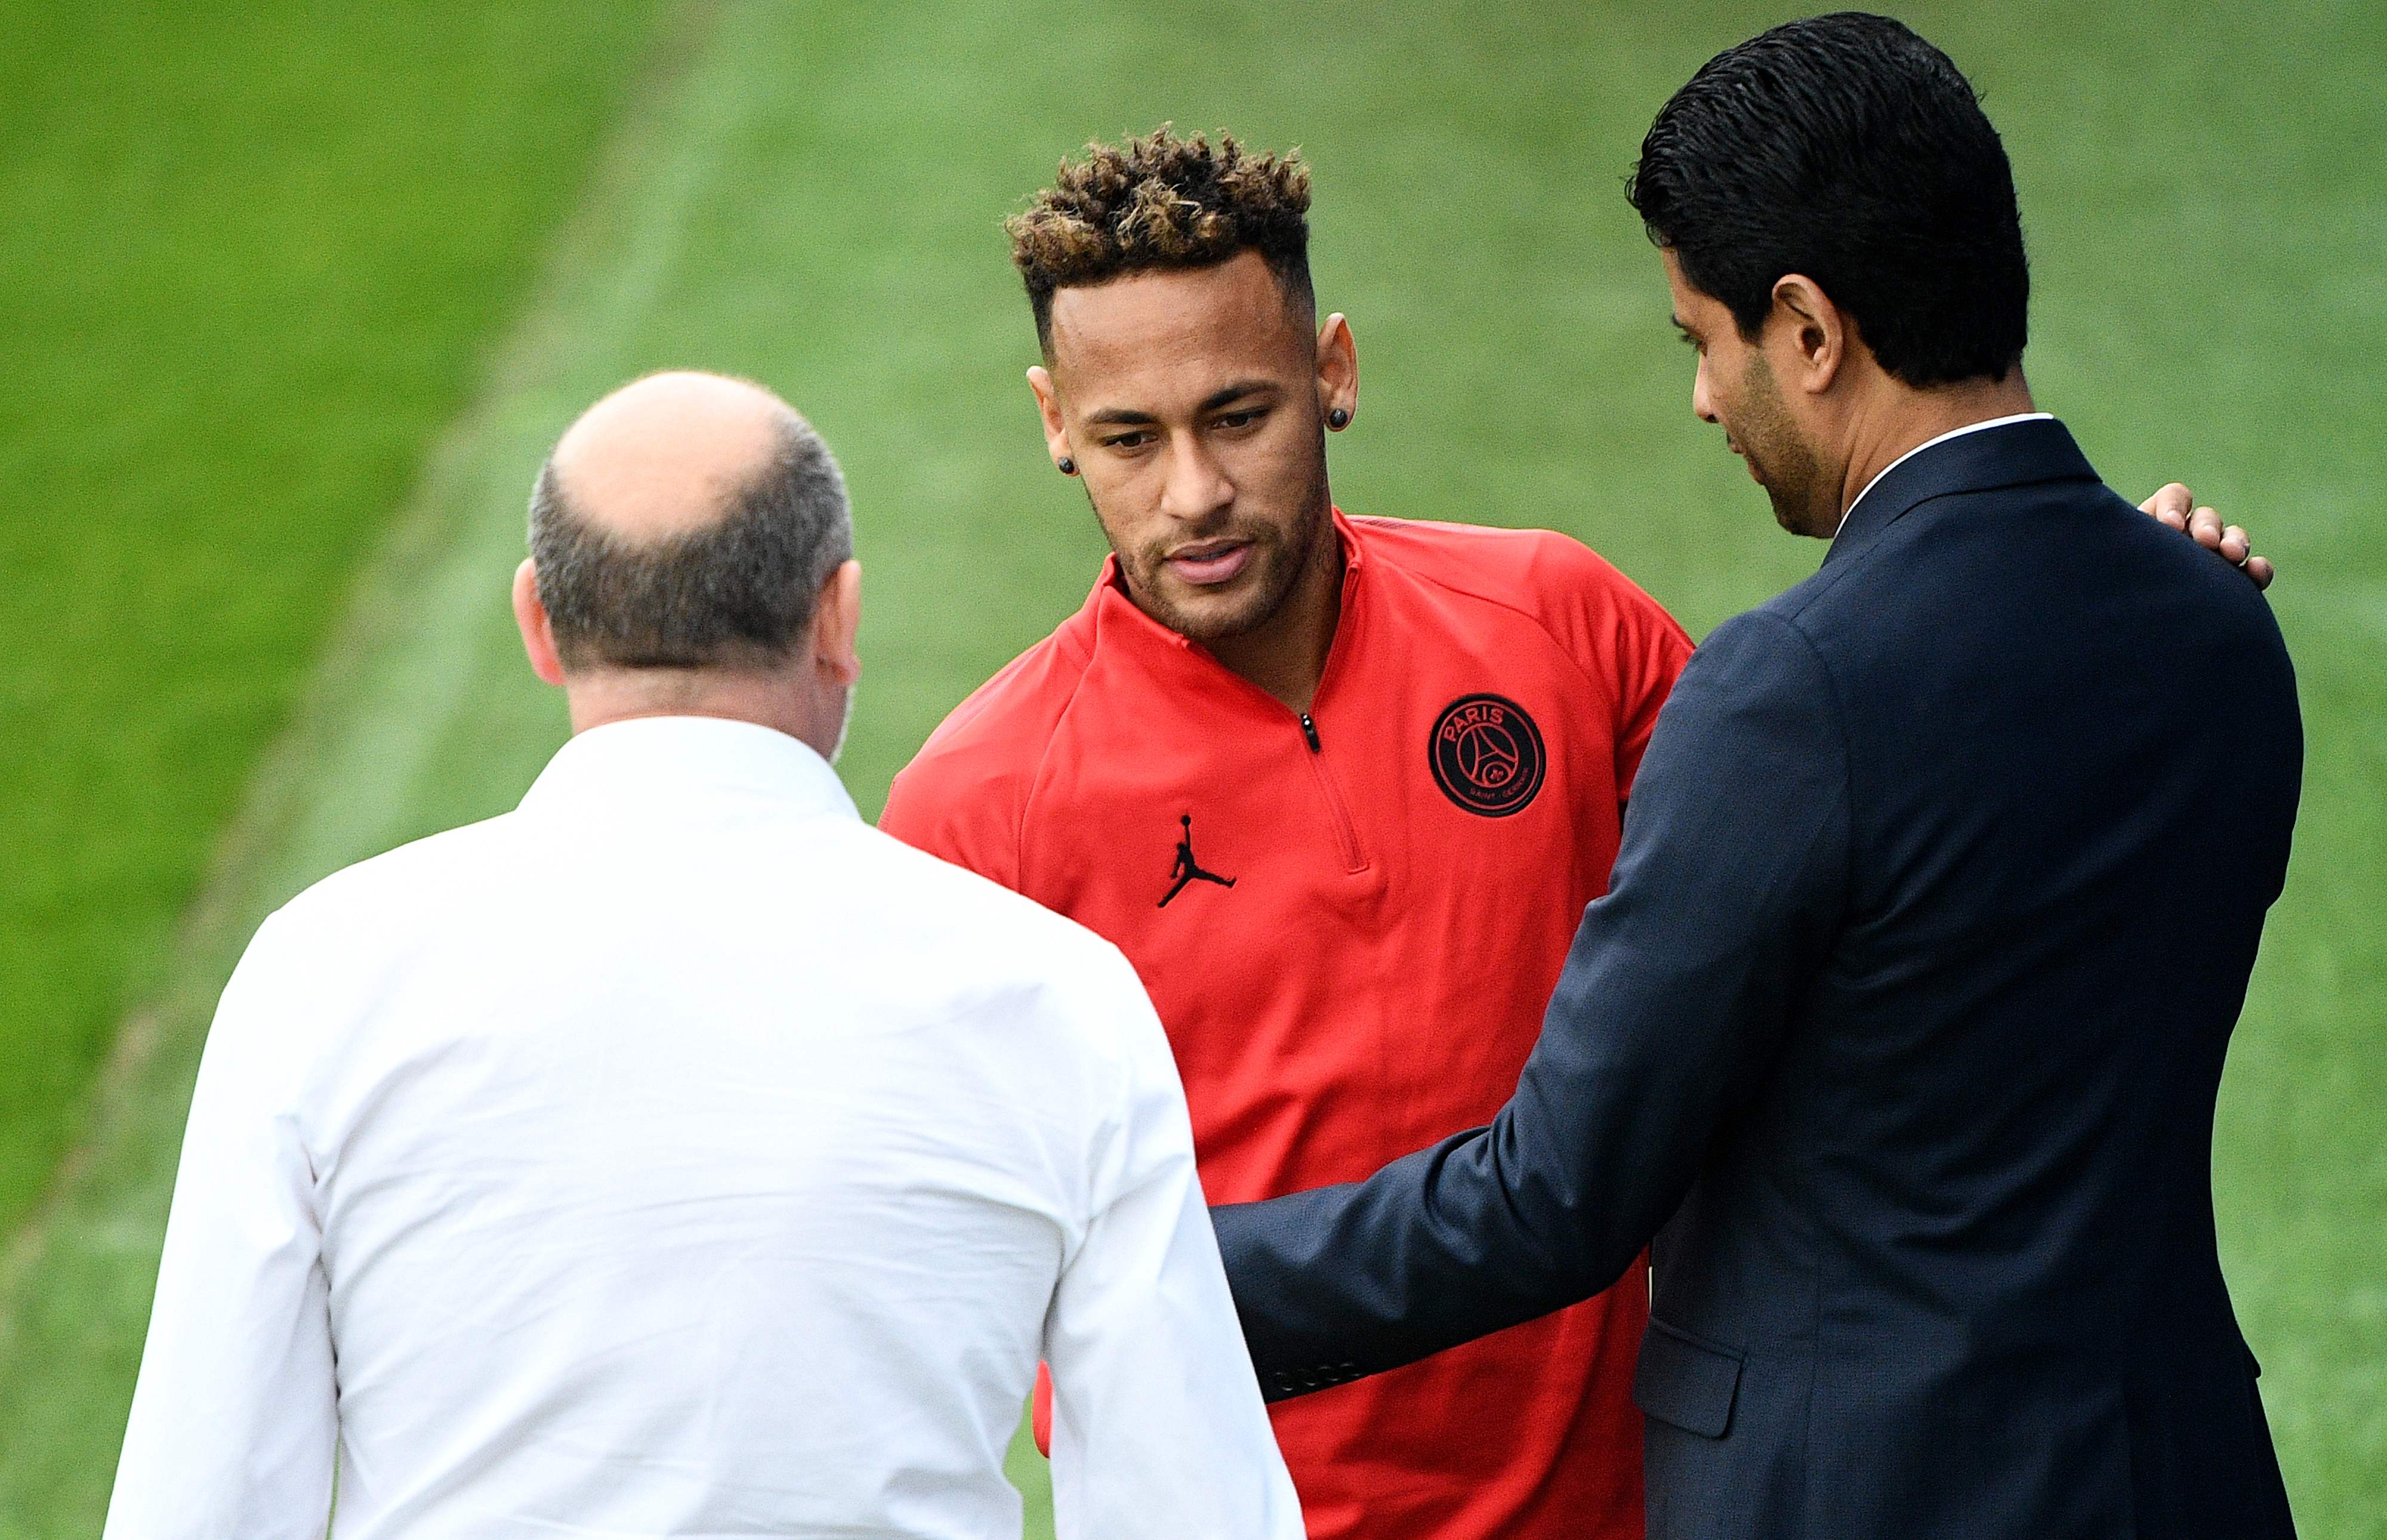 Plus de blagues au PSG, Nasser Al Khelaifi envoie un message fort à Neymar